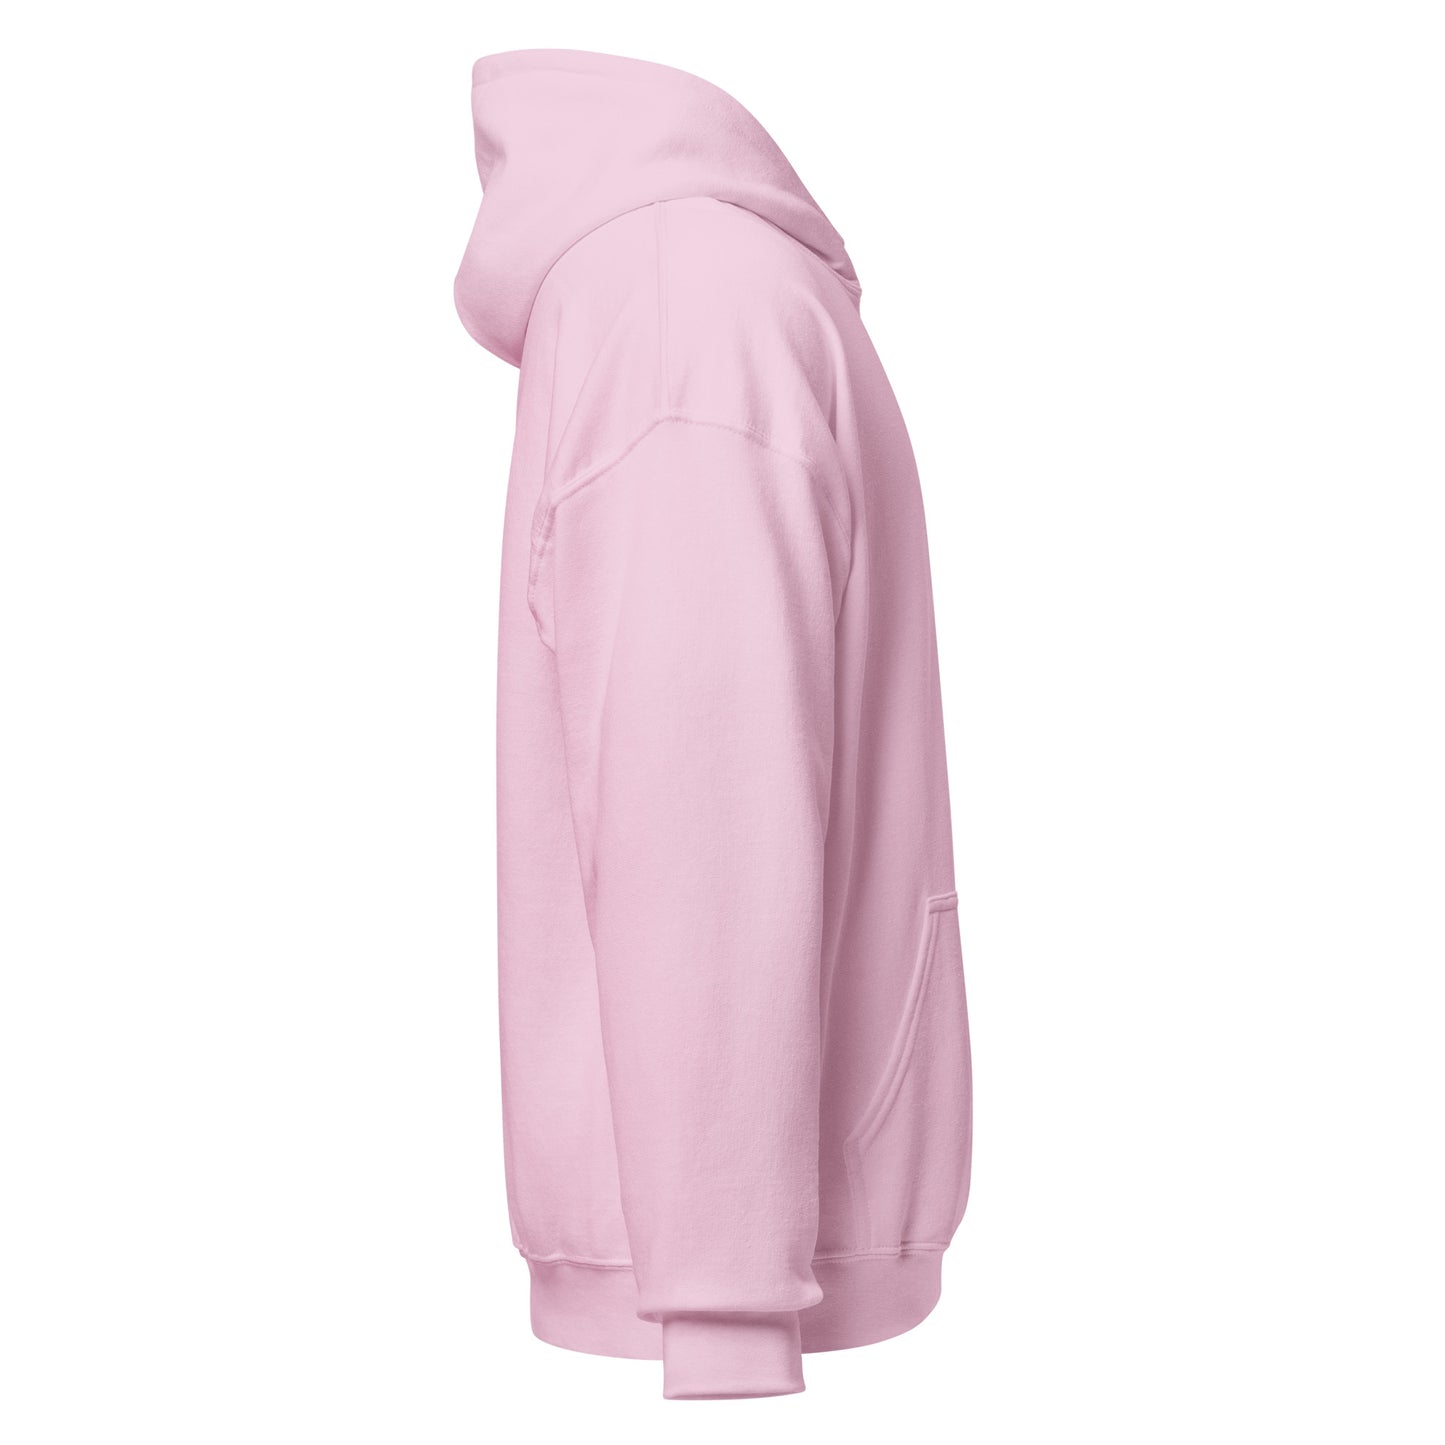 Pink Tennis Club unisex hoodie